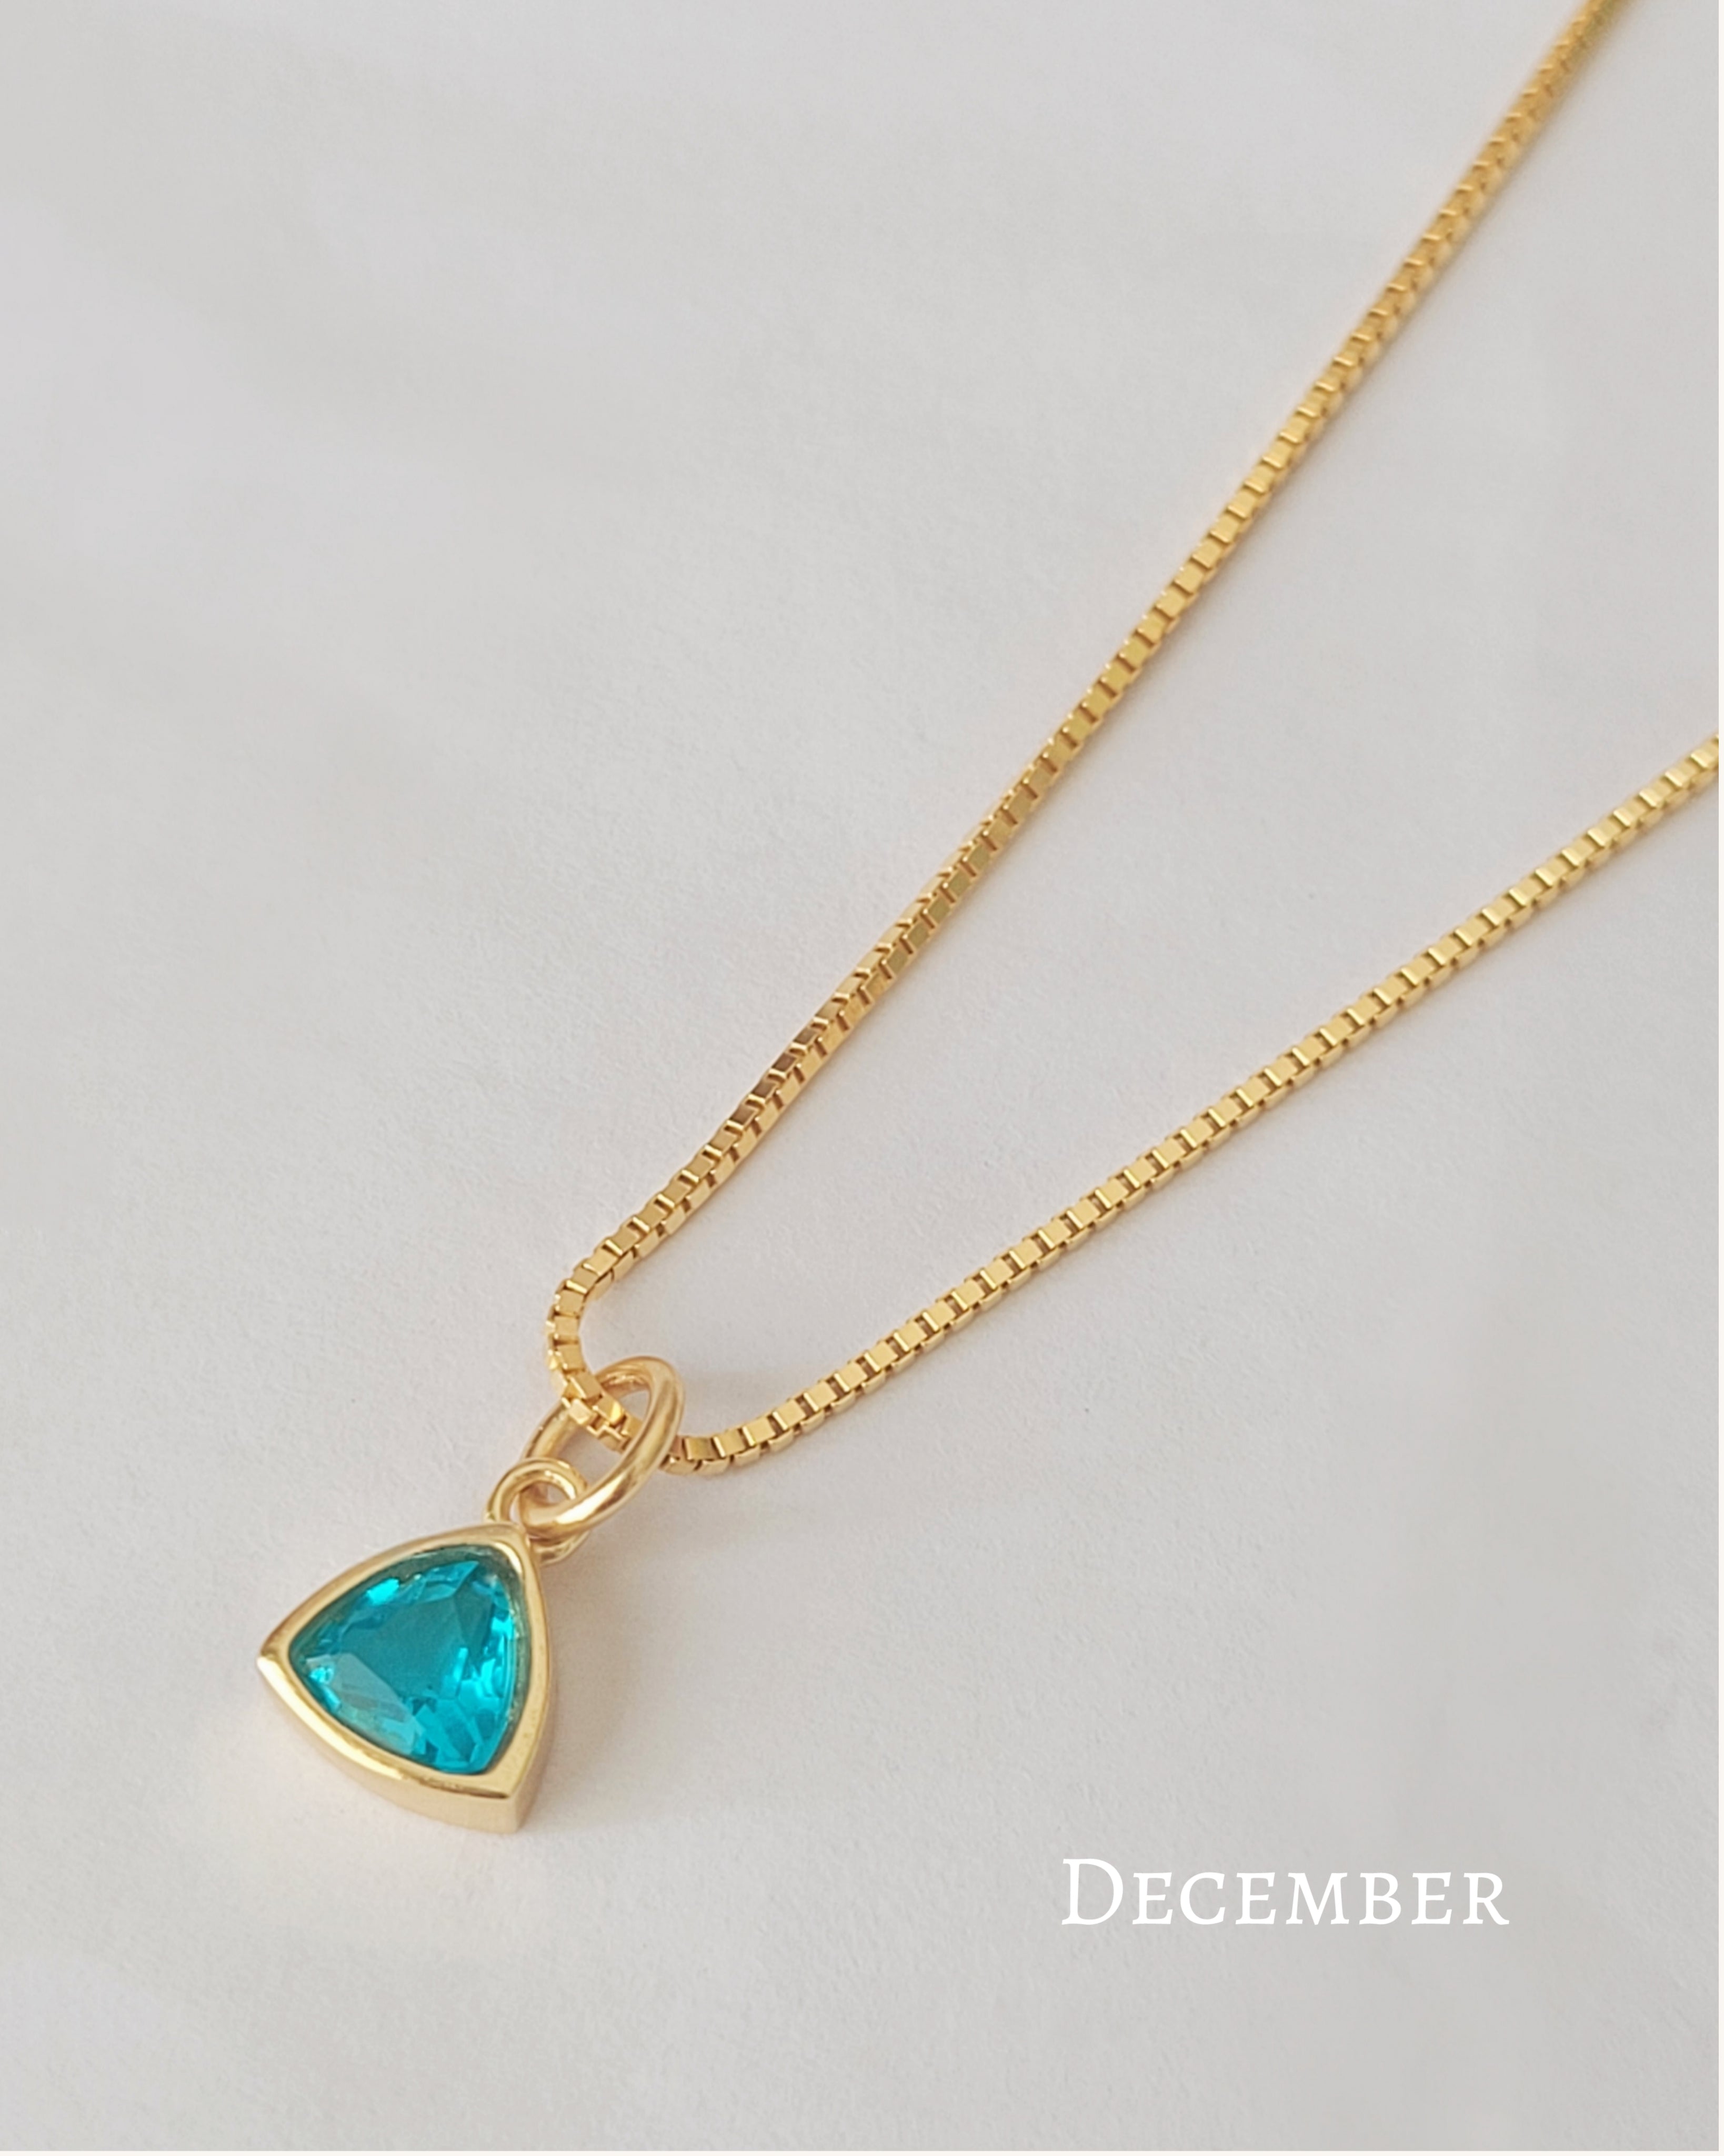 December birthstone necklace 